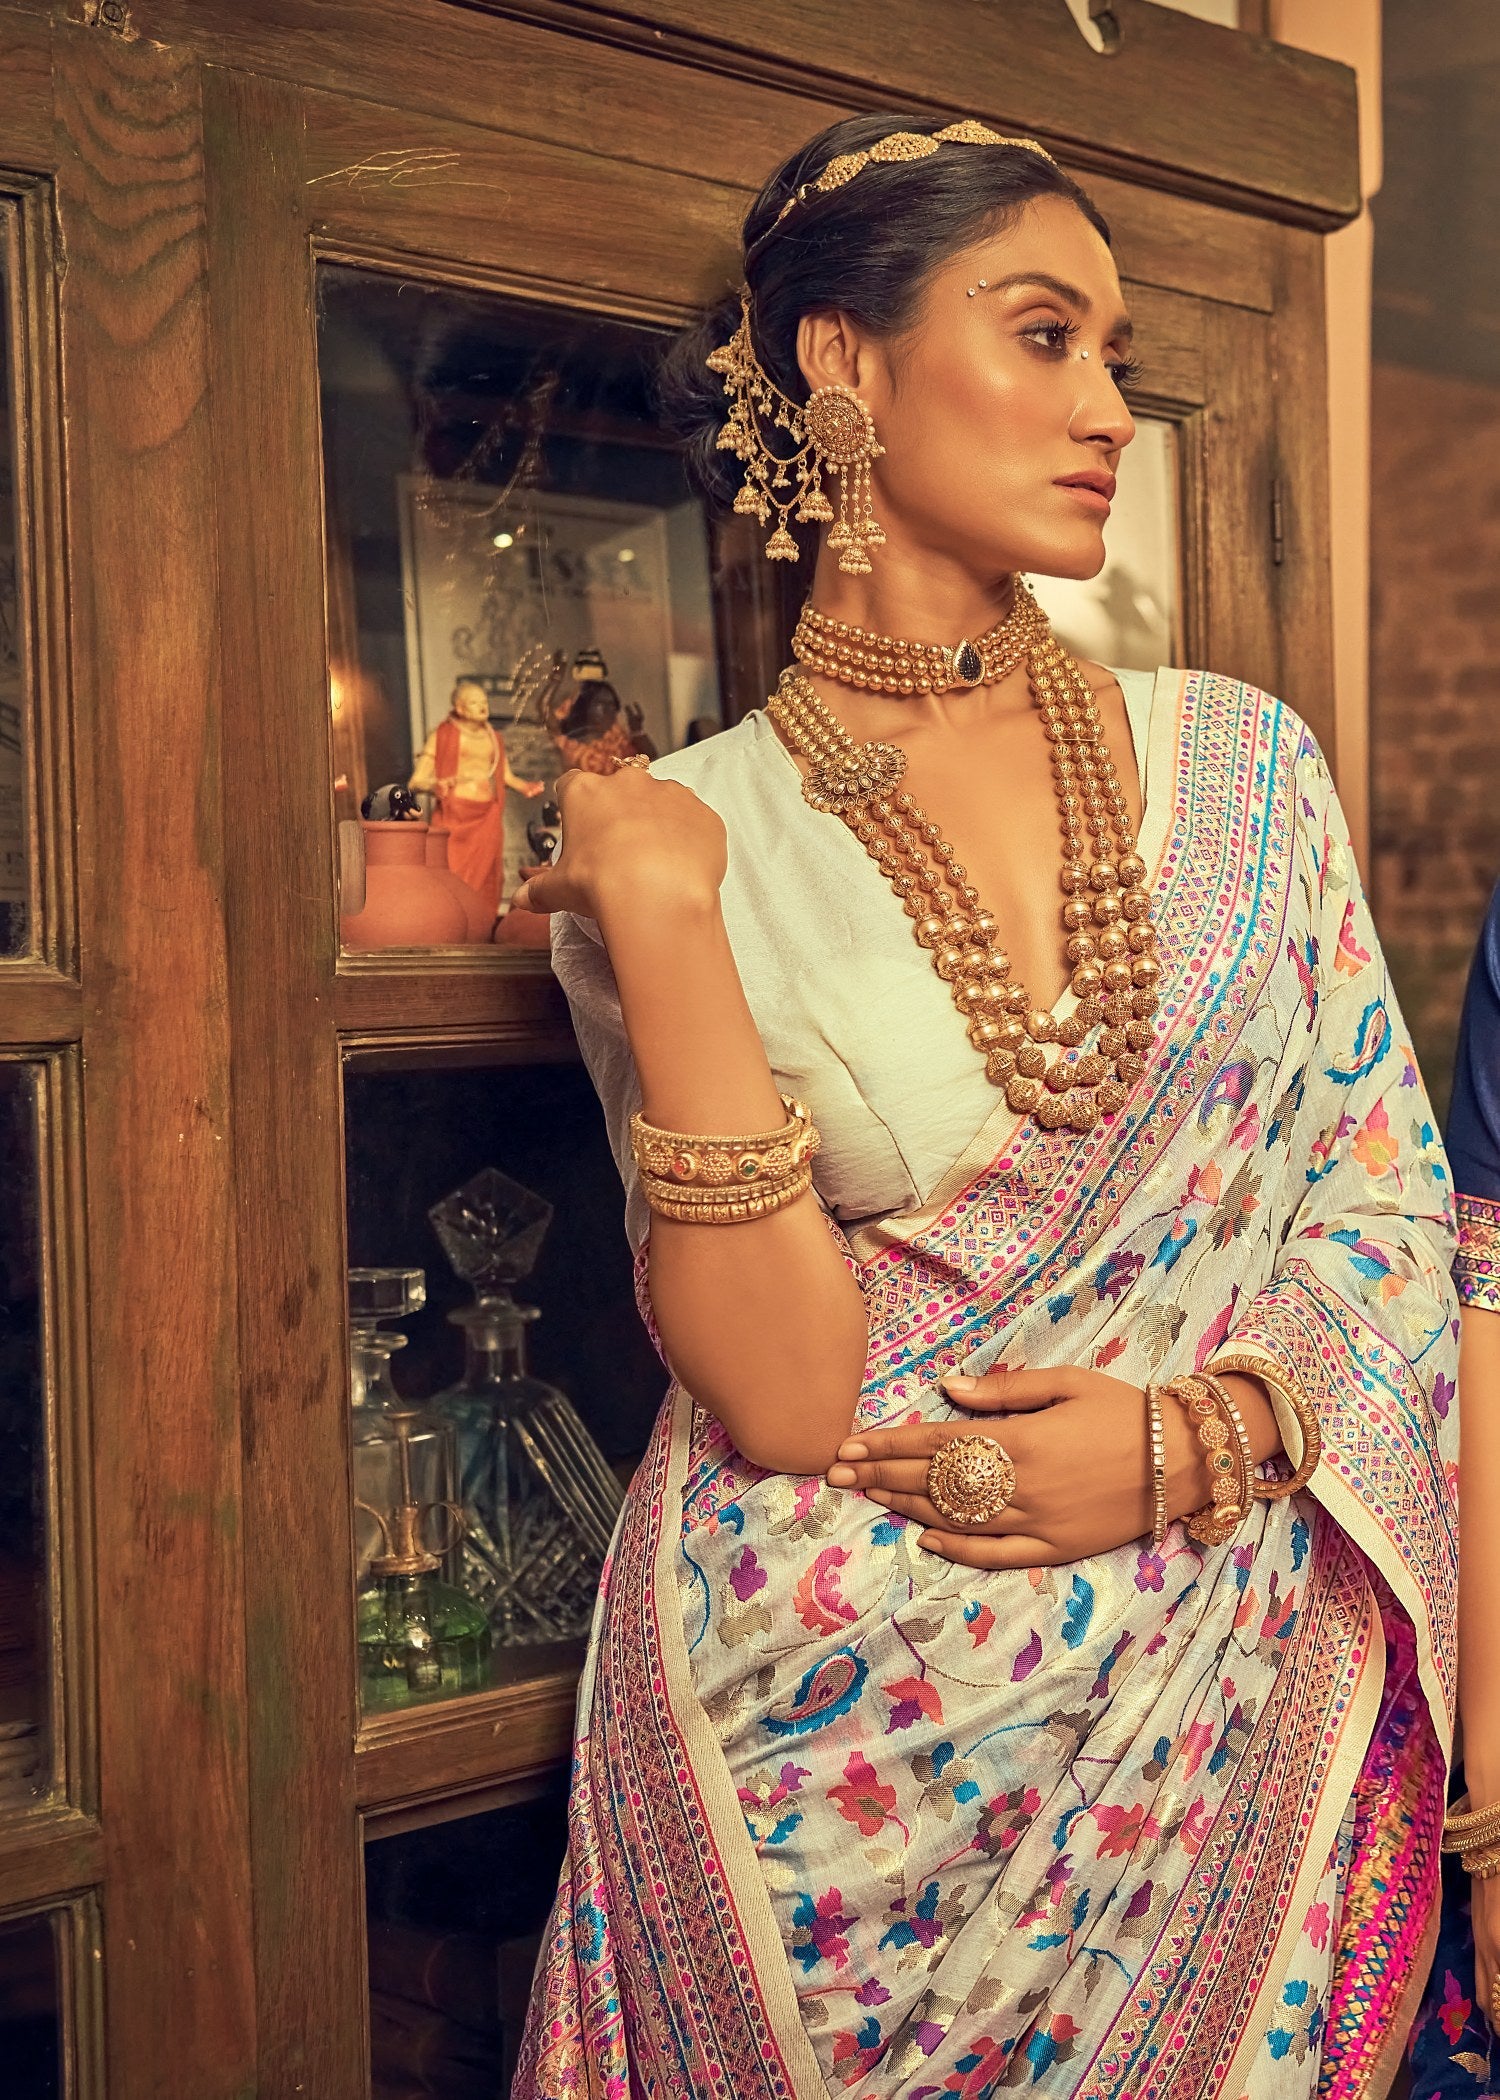 Elegant White Kashmiri Modal Saree: Perfect for Parties and Weddings